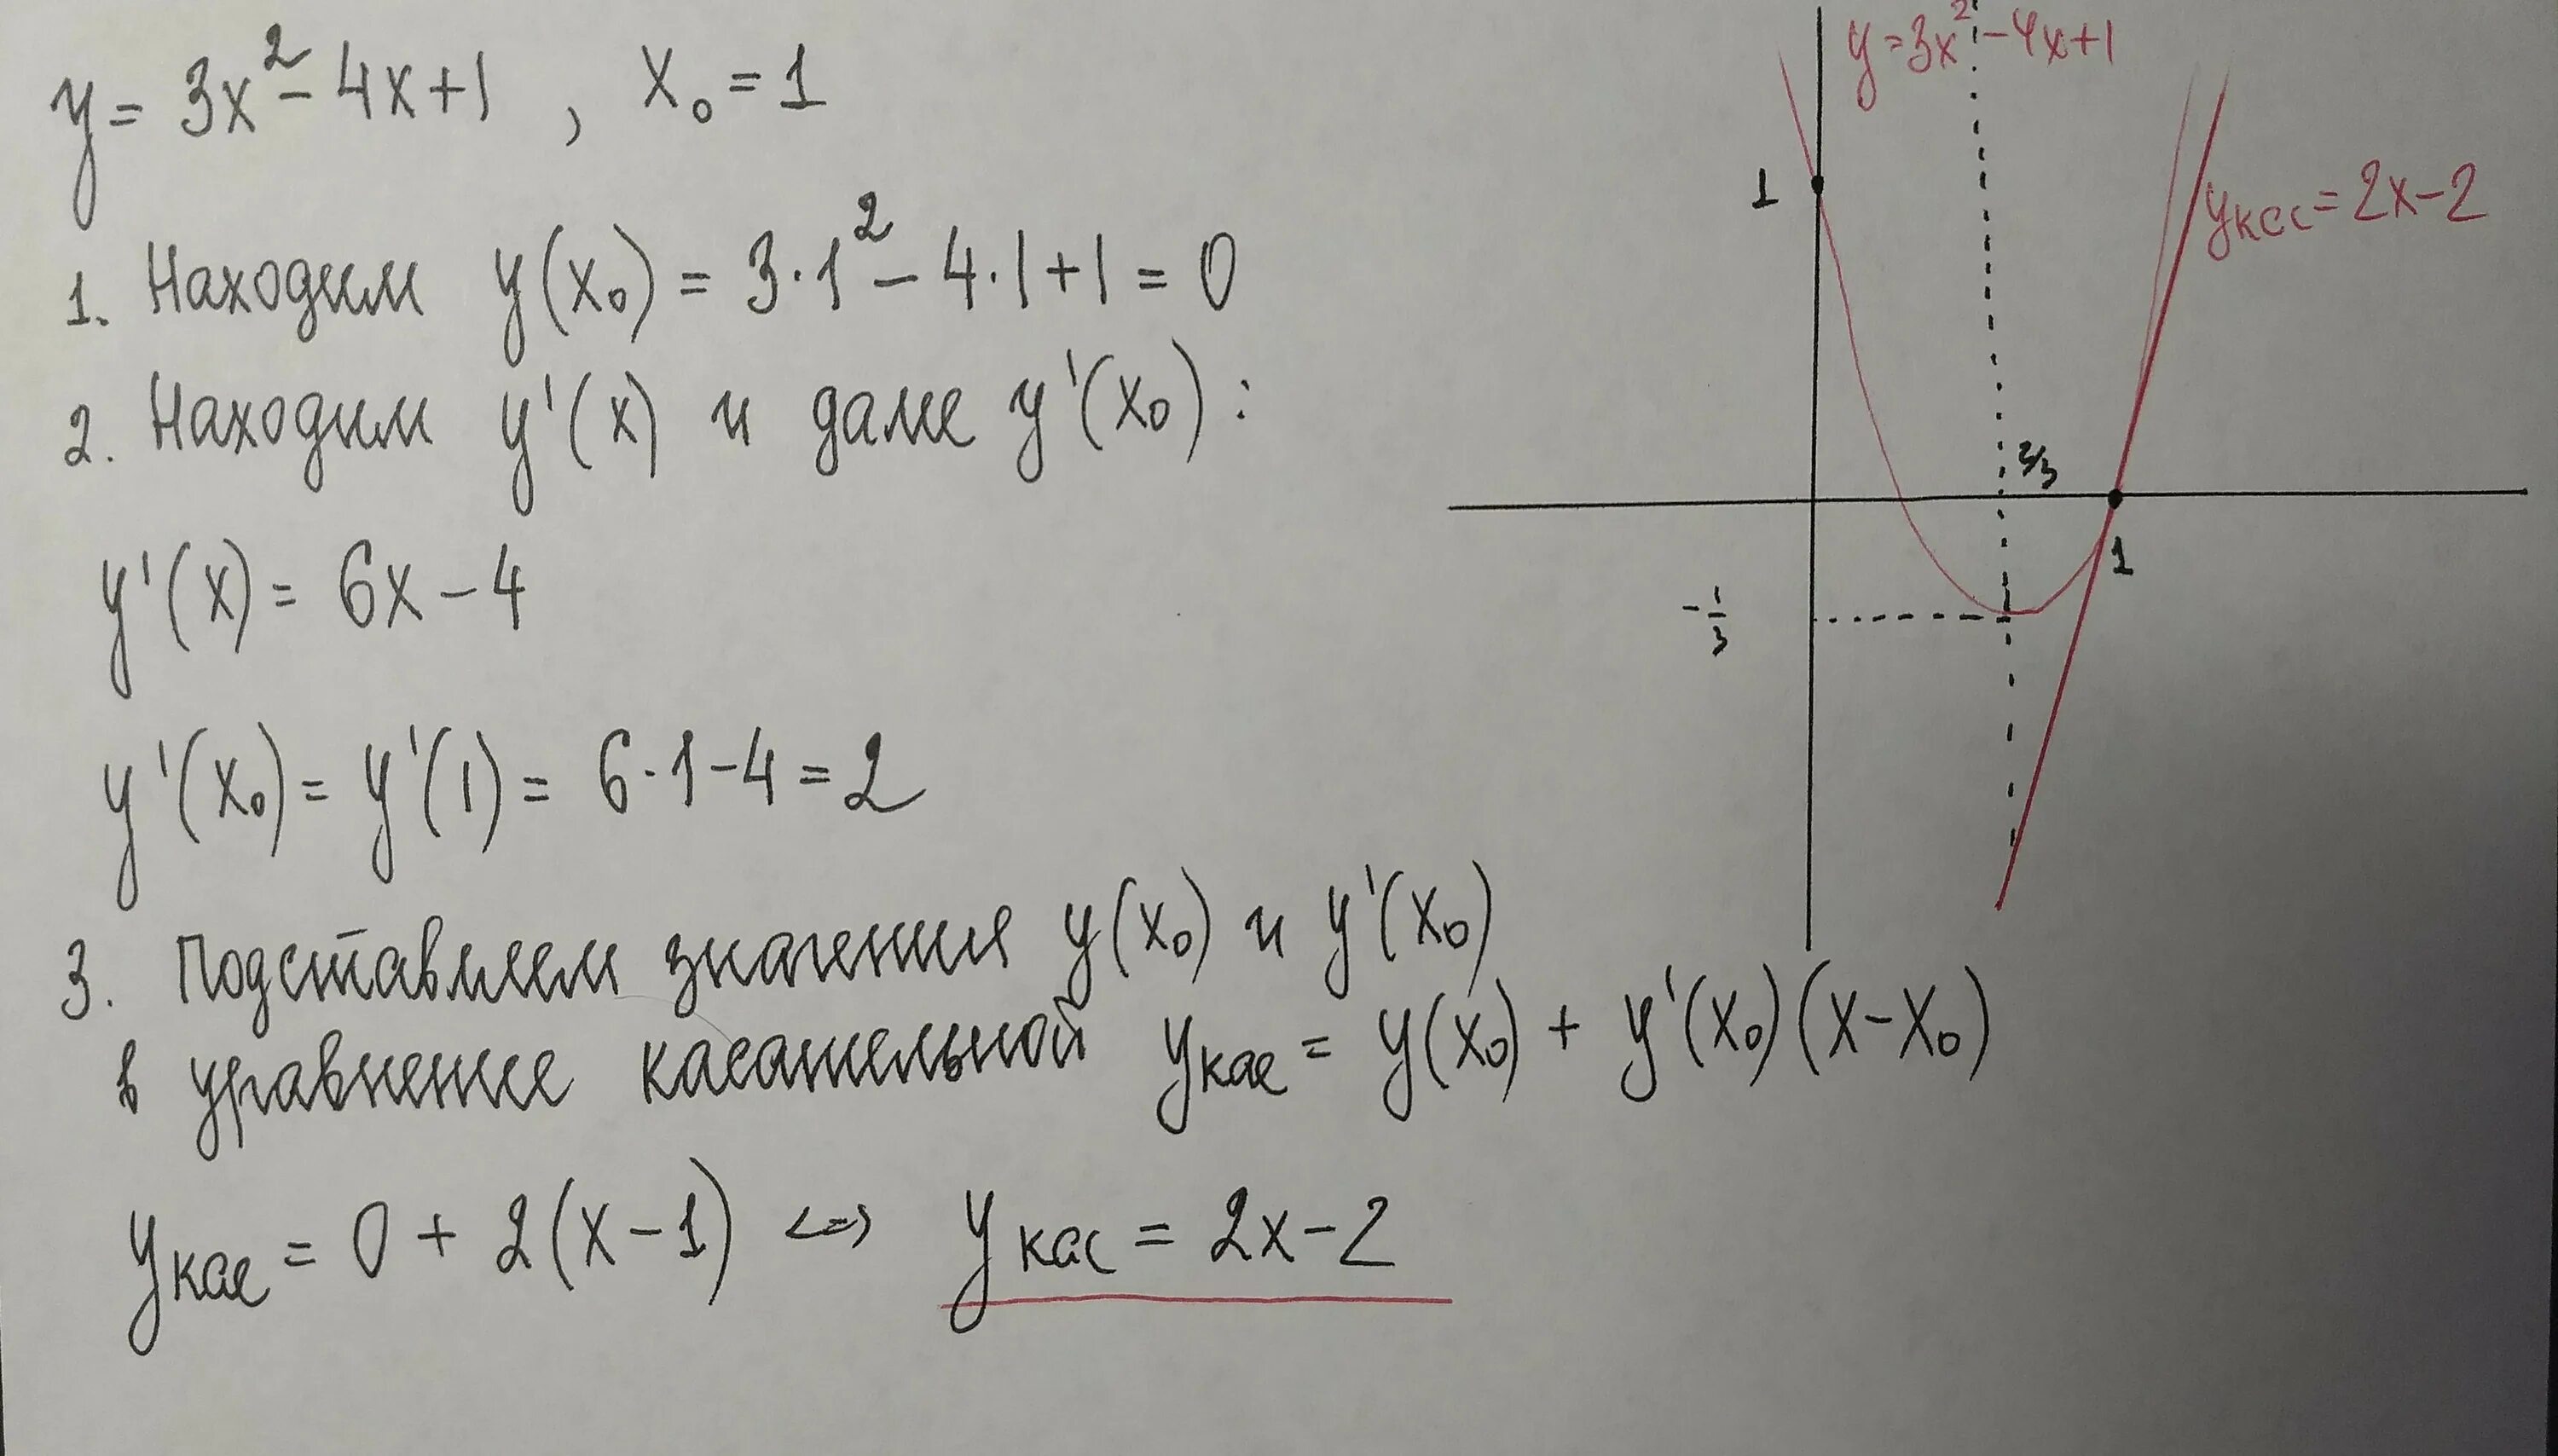 4x2 4x 2 0. Уравнение касательной к параболе в точке. Уравнение касательной к параболе y=x\2 - 4x +3. Уравнение касательной к Кривой в точке. Уравнение касательной в точке x0.